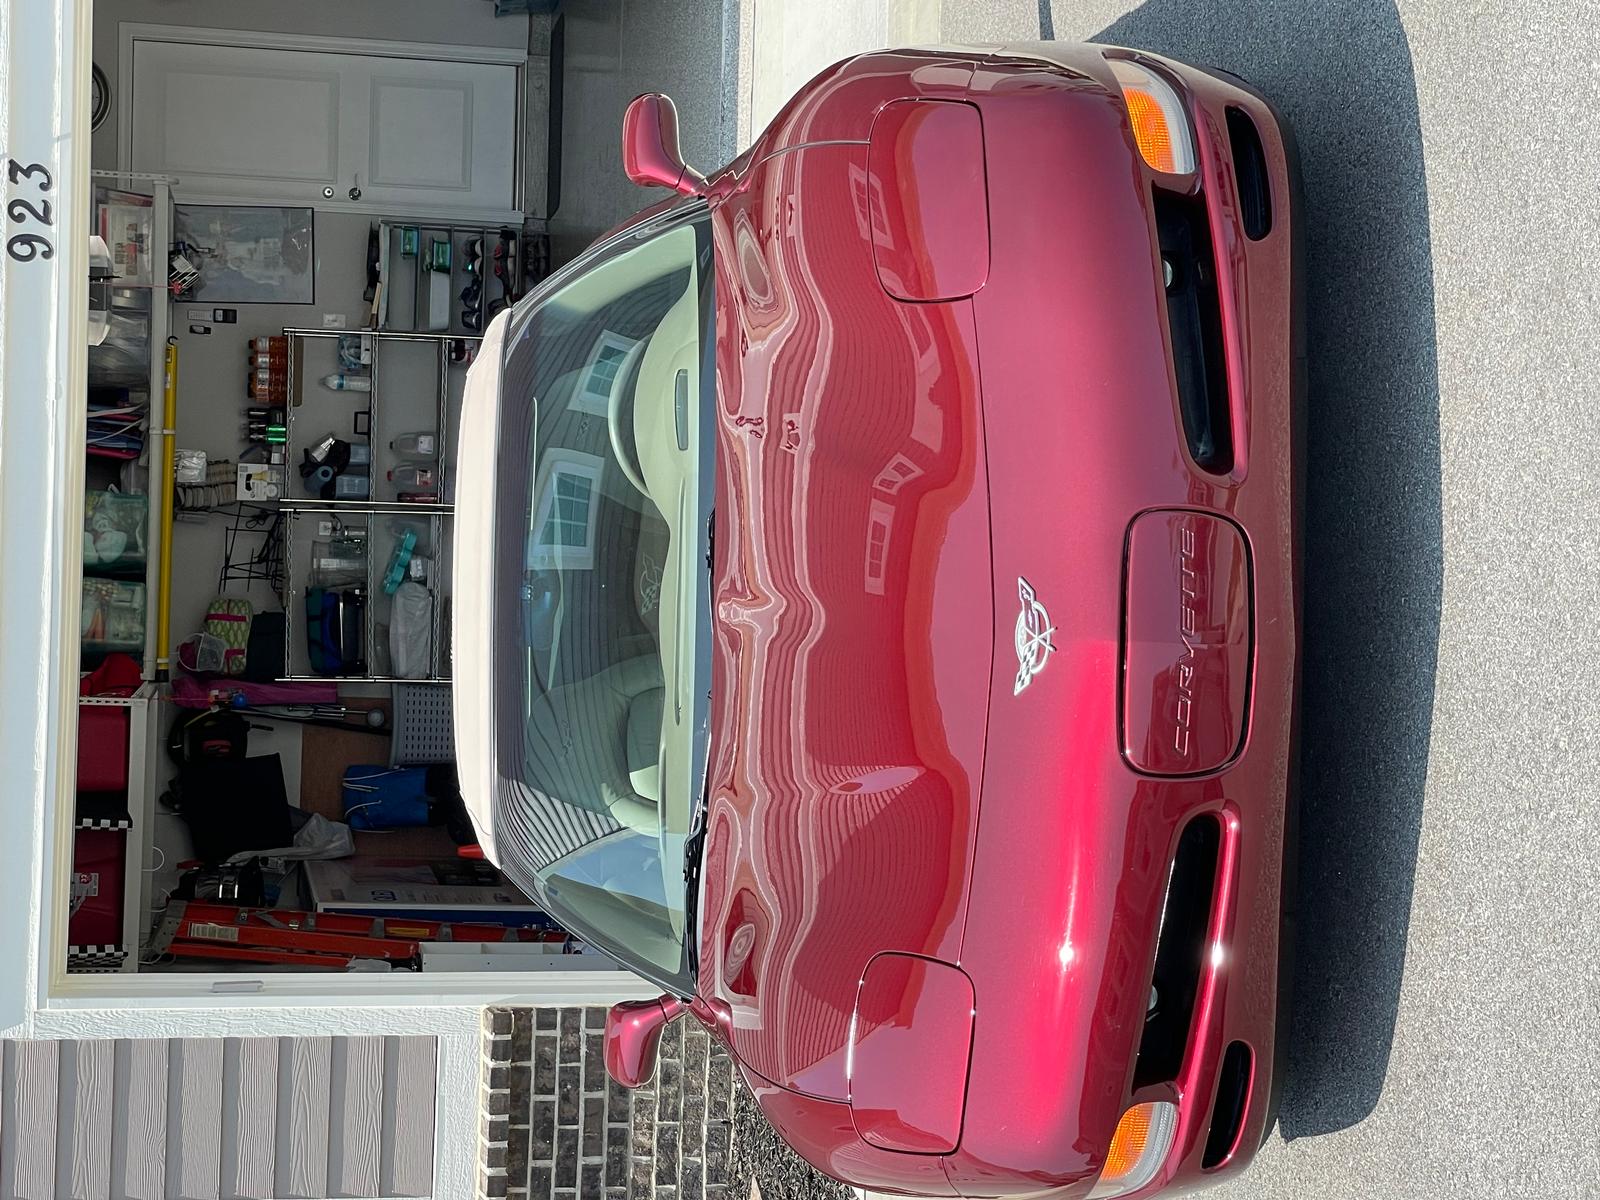 2003 corvette for sale